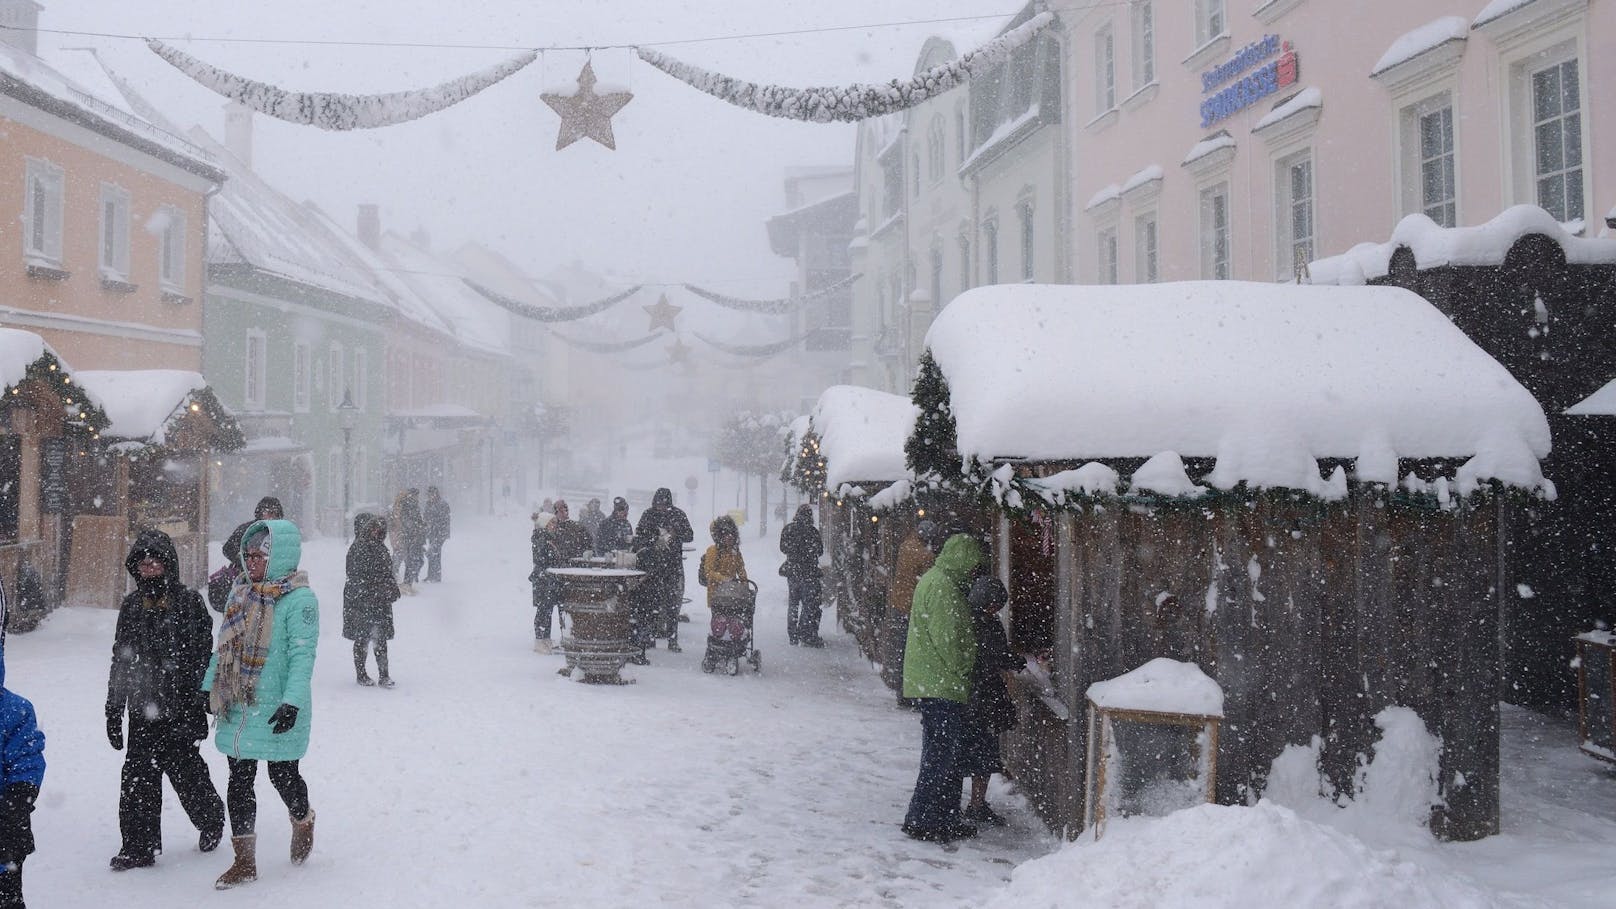 Wintereinbruch in Österreich: Der traditionsreiche "Mariazeller Advent" ist komplett eingeschneit.